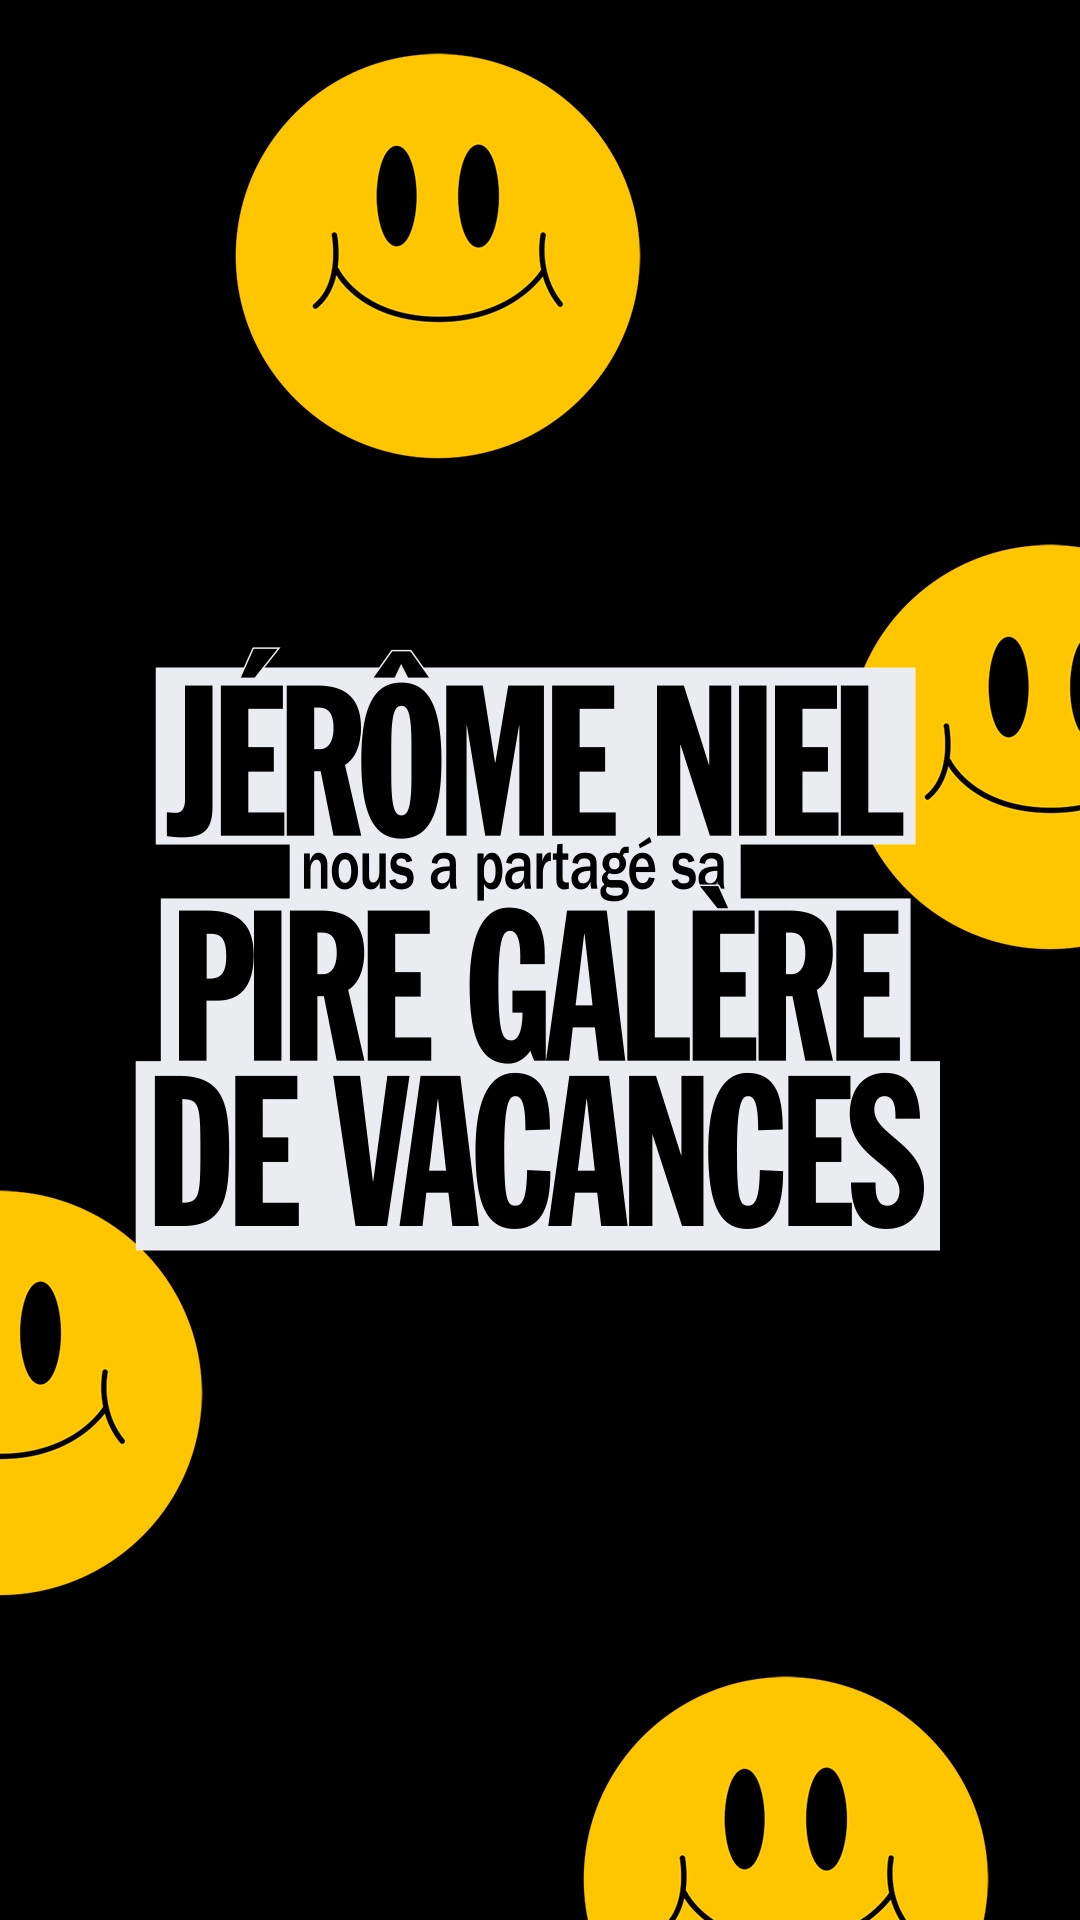 L’importance de bien choisir ses vacances selon Jérôme Niel